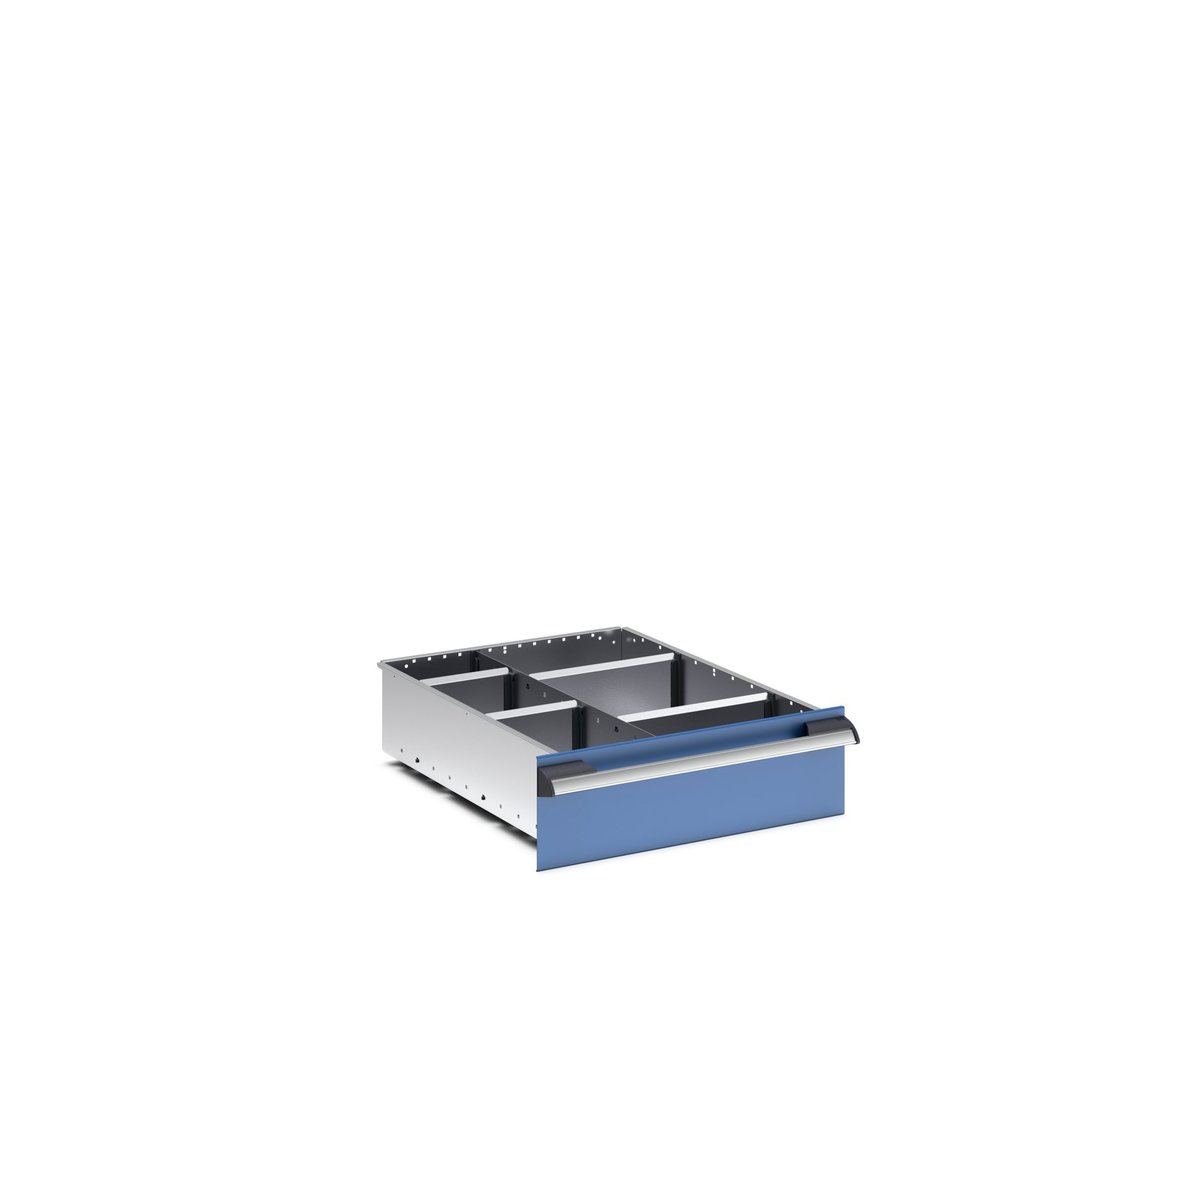 43020632.51 - cubio adjustable divider kit